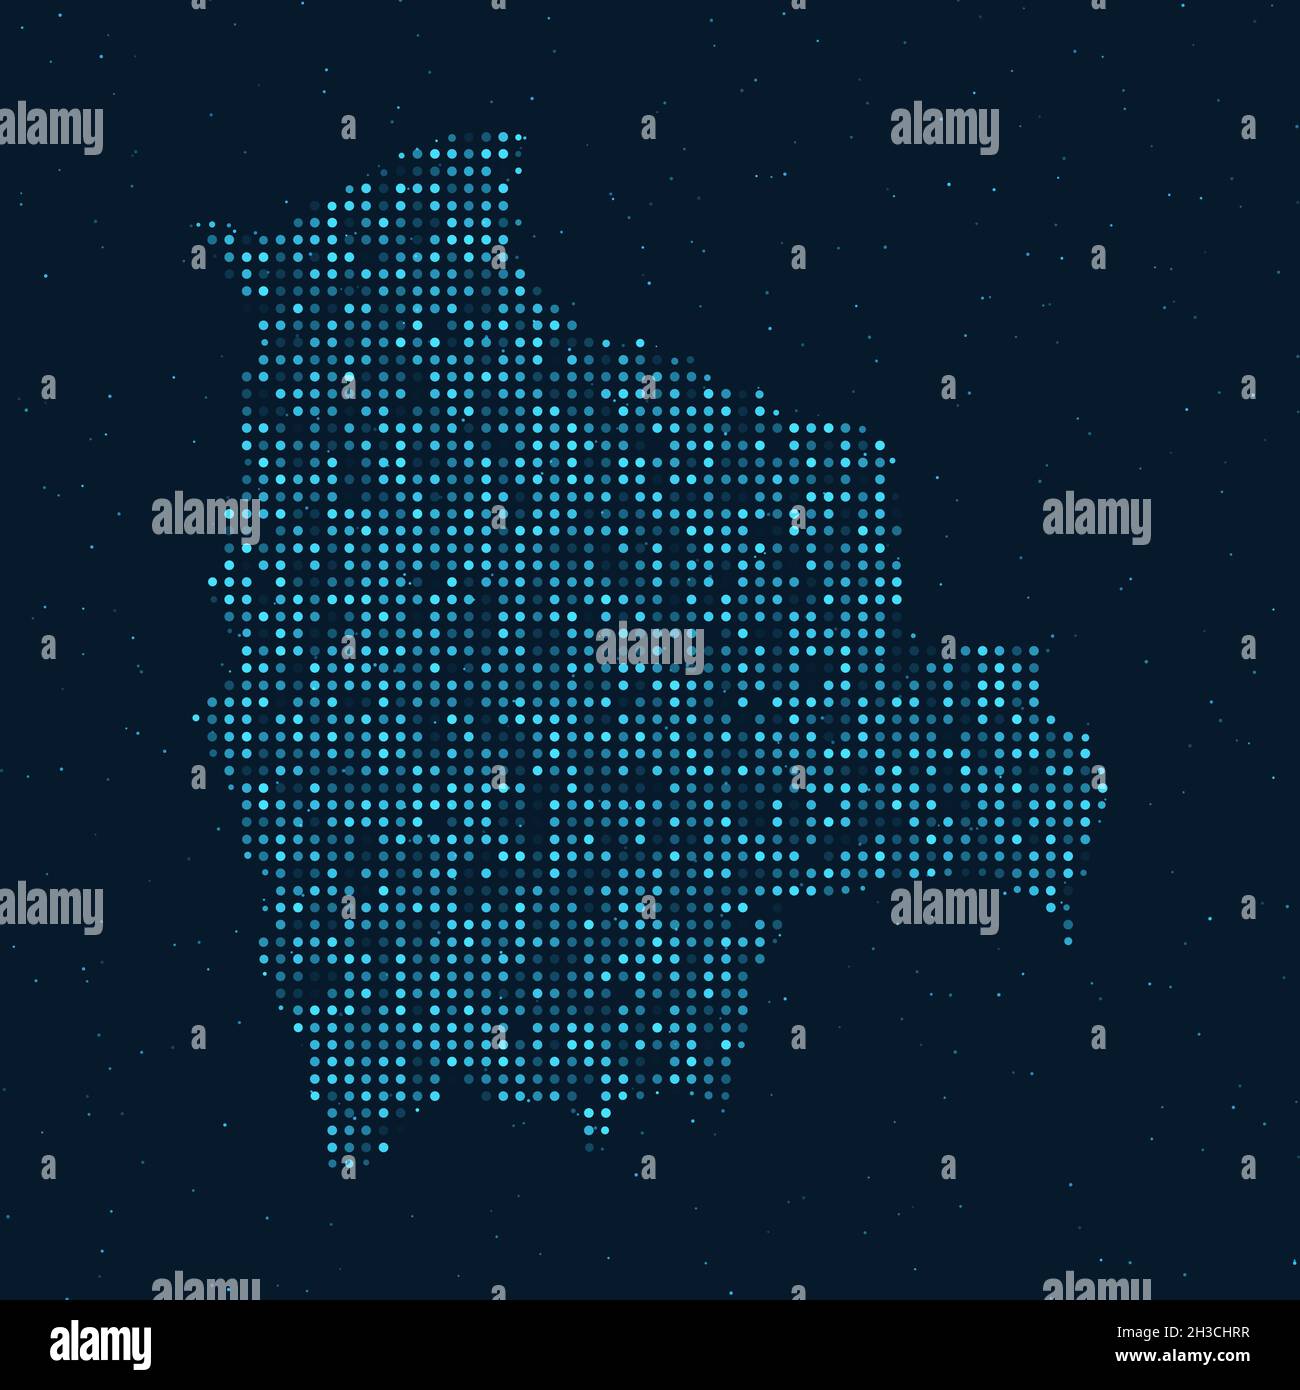 Résumé Halftone à pointillés avec effet étoilé sur fond bleu foncé avec carte de Bolivie.Technologie numérique en pointillés sphère et structure. Vecteur Illustration de Vecteur